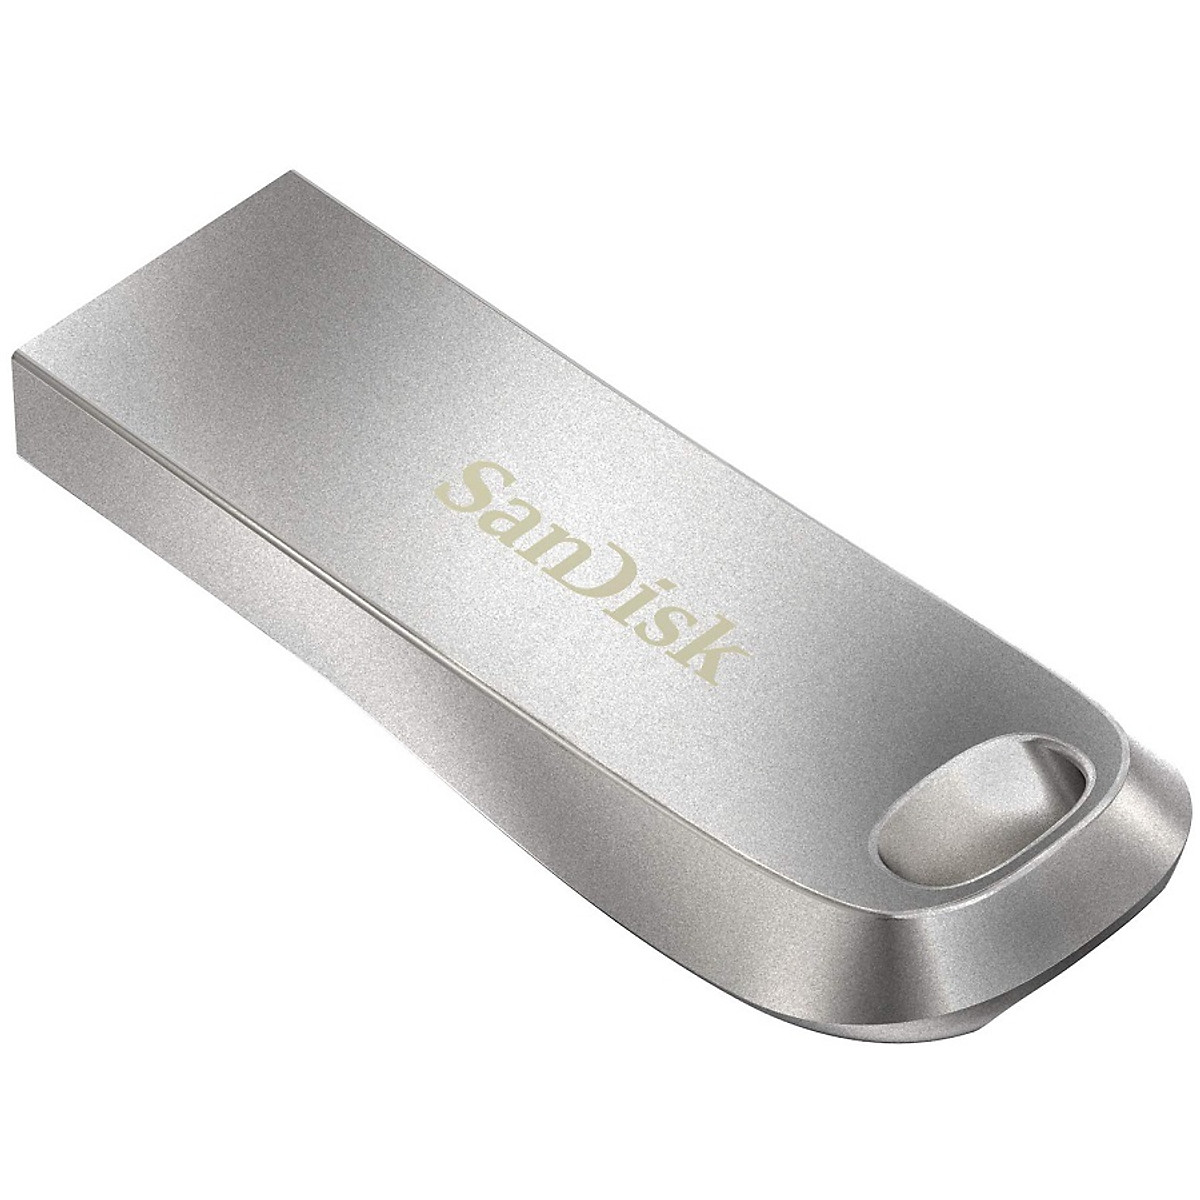 USB 3.1 SanDisk Ultra Luxe CZ74 - 64GB (Hàng Nhập Khẩu) - USB